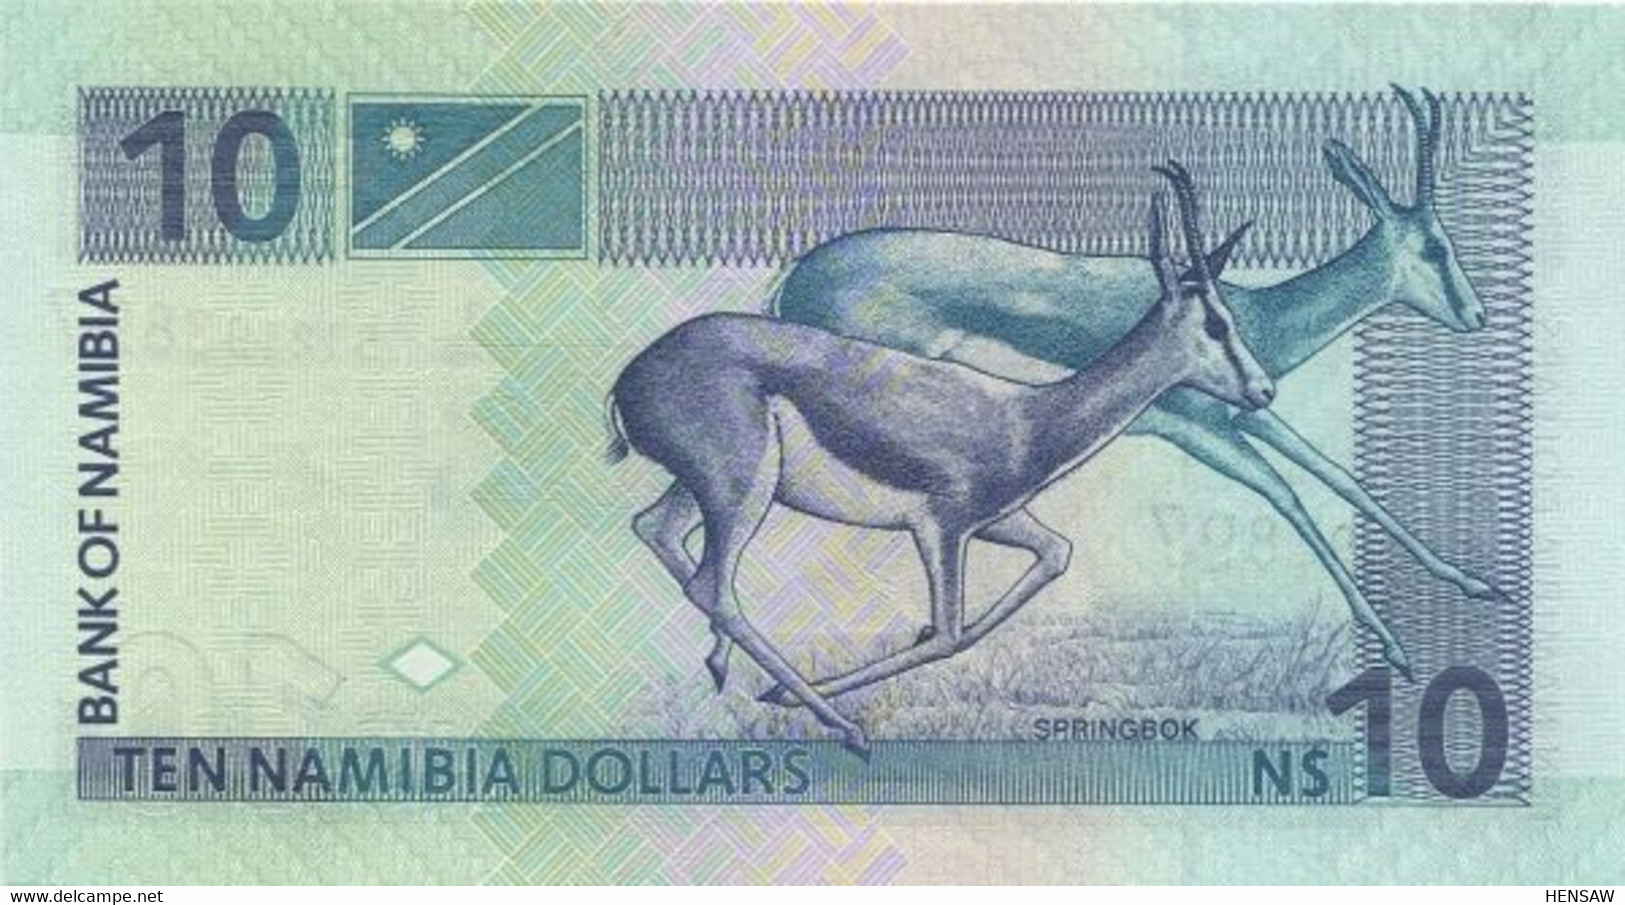 NAMIBIA 10 DOLLARS P 4Bb 2001 UNC SC NUEVO - Namibie